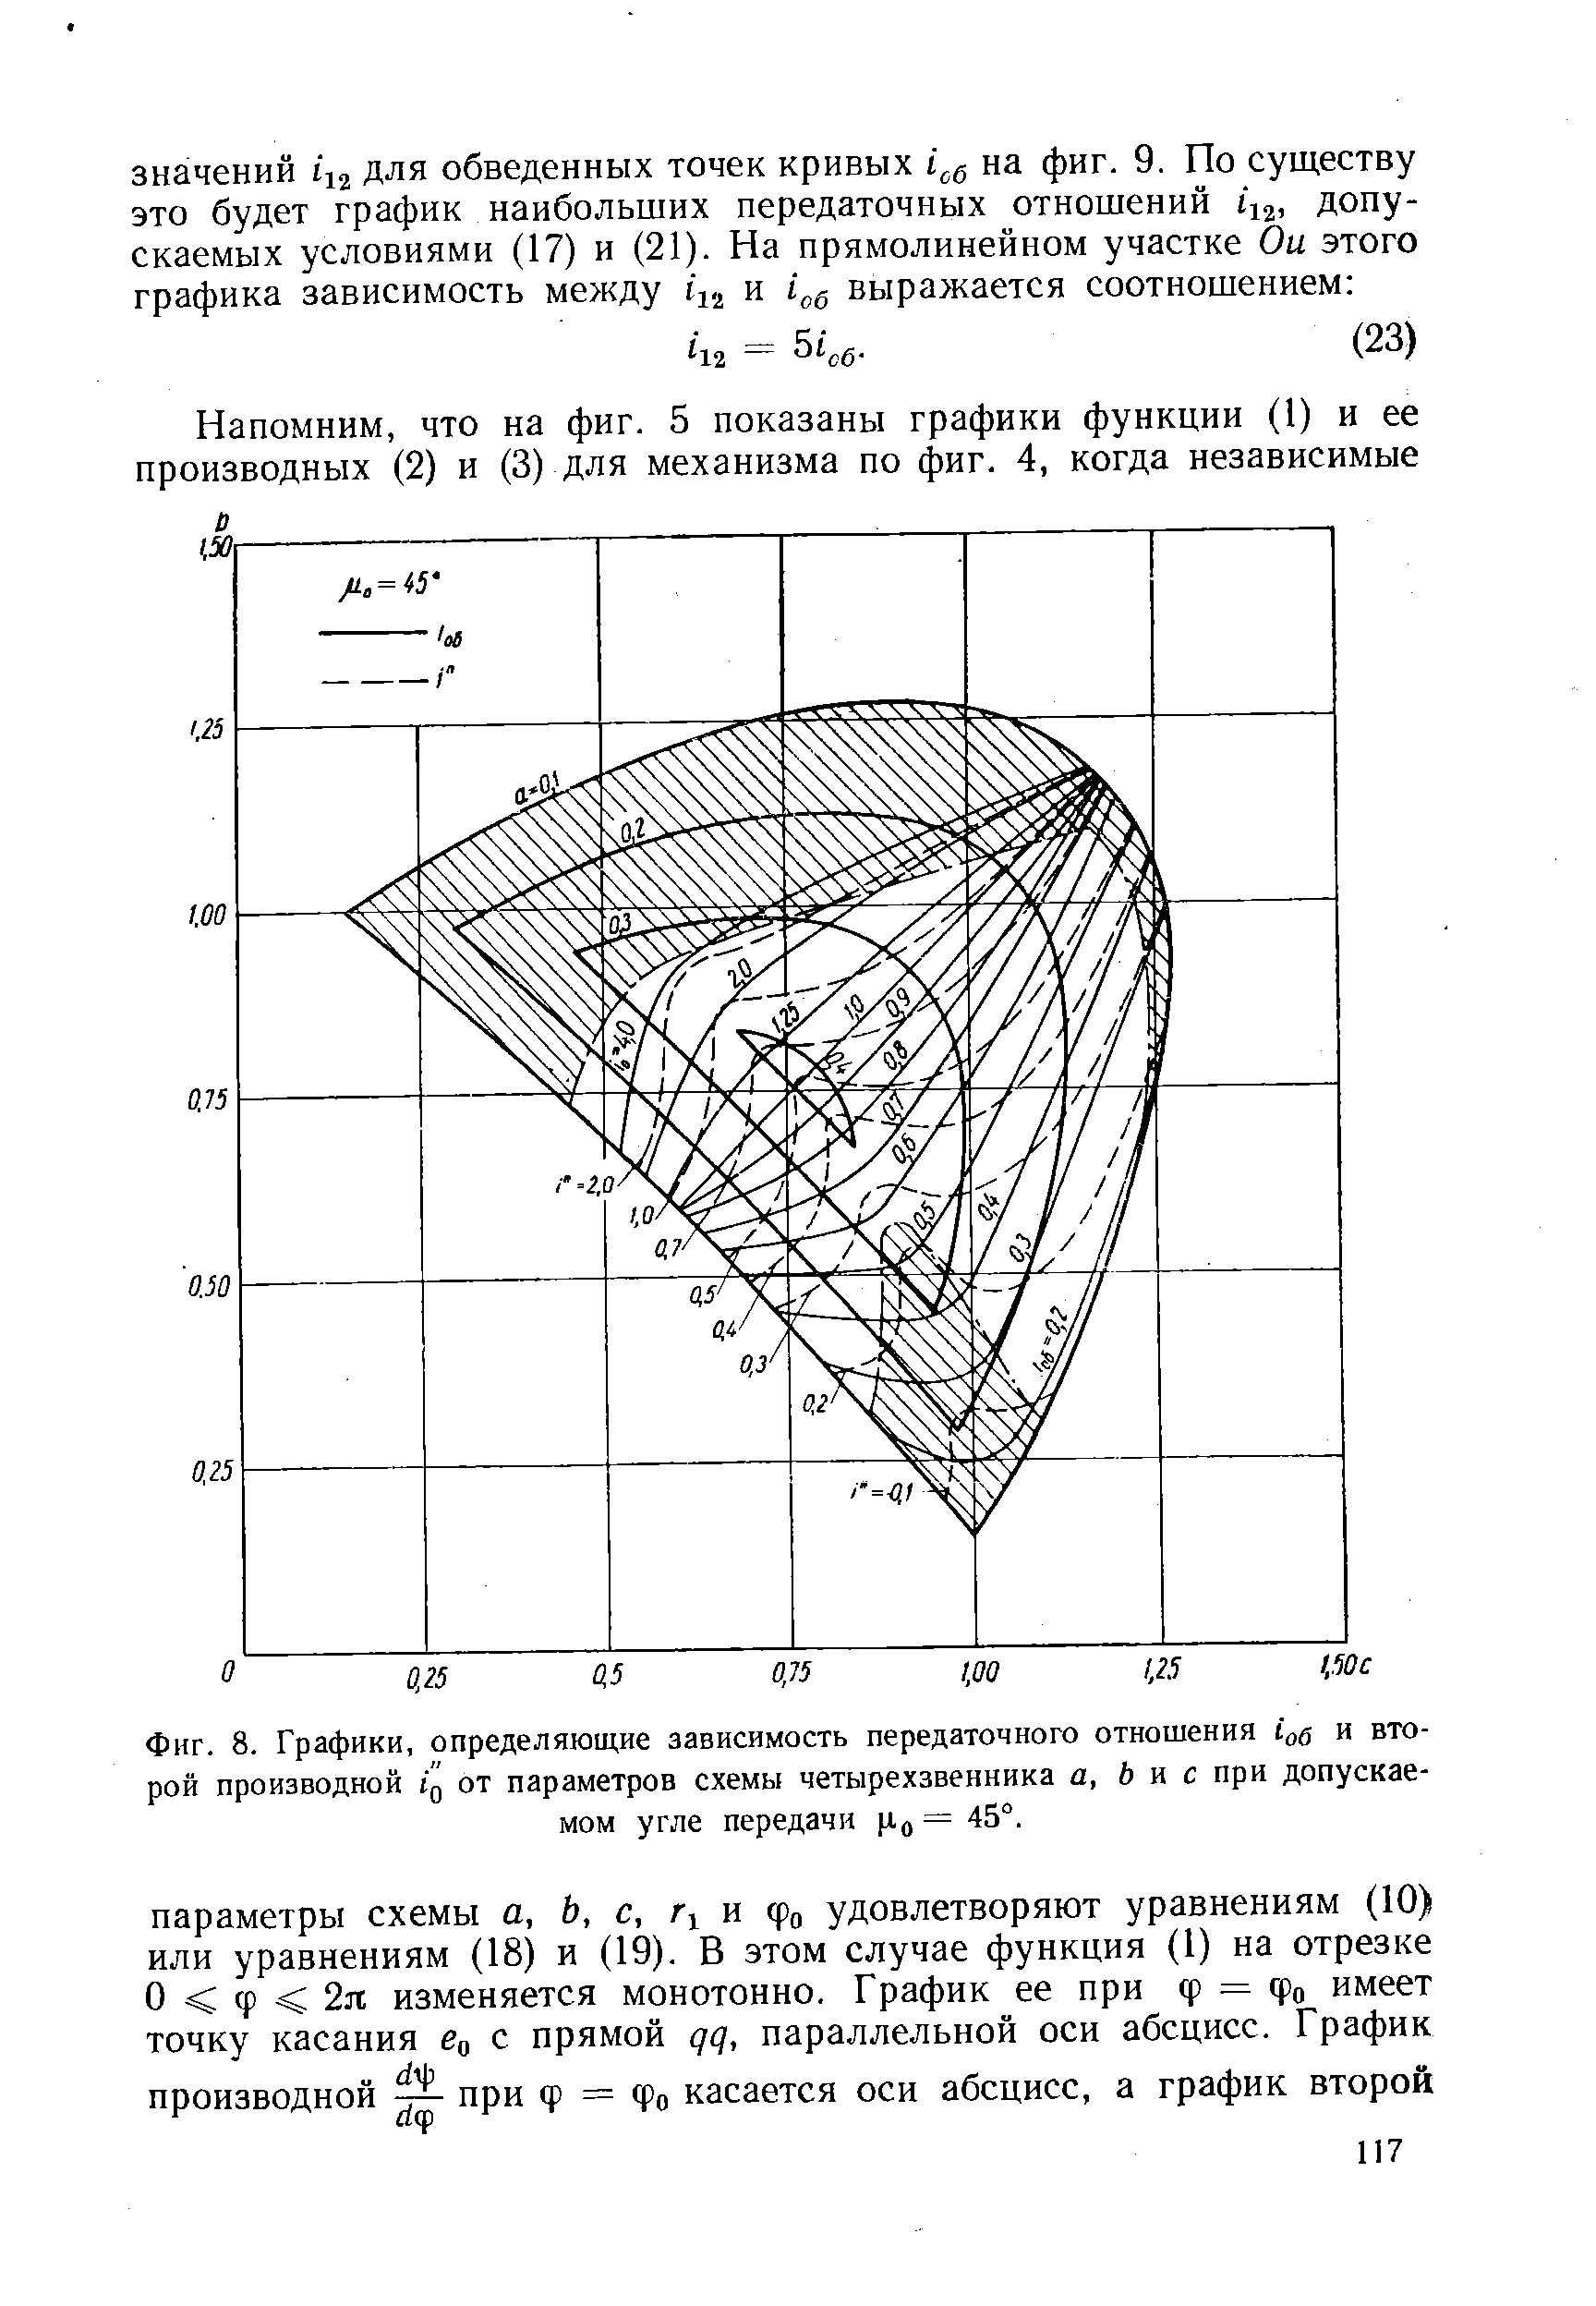 Фиг. 8. Графики, определяющие зависимость передаточного отношения io и второй производной ig от параметров схемы четырехзвенника а, Ь н с при допускаемом угле передачи Цо = 45°.
